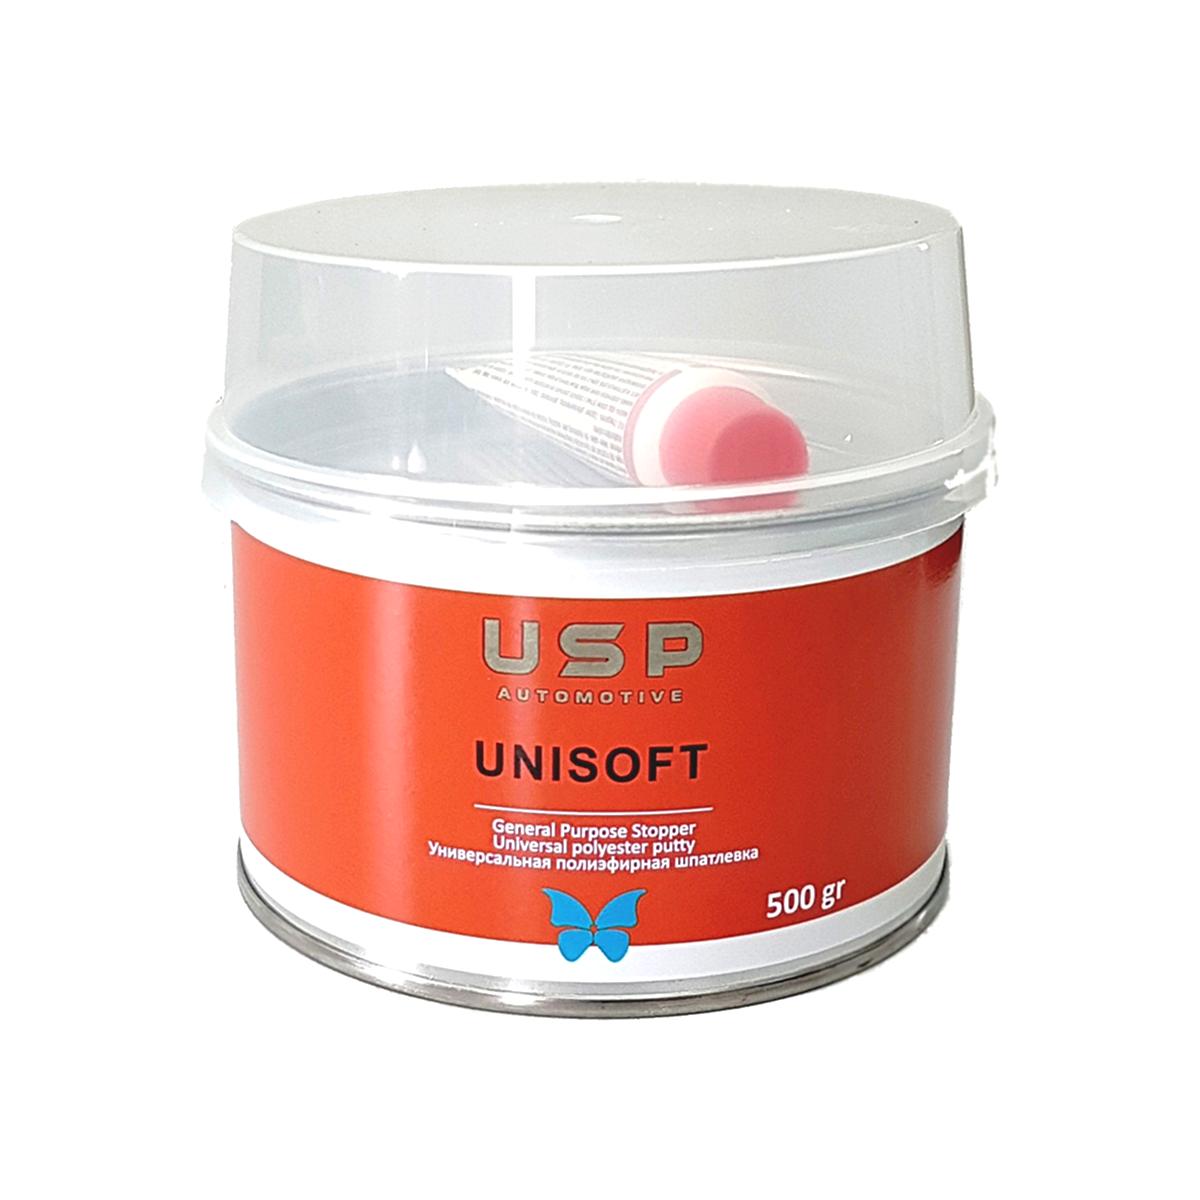 Юнисофт. Шпатлевка Nov-Unisoft (0,25 кг) цвет. USP шпатлевка Unisoft мягкая 242г. Unisoft полиэфирная, 0,25кг. Замазка для автомобиля.